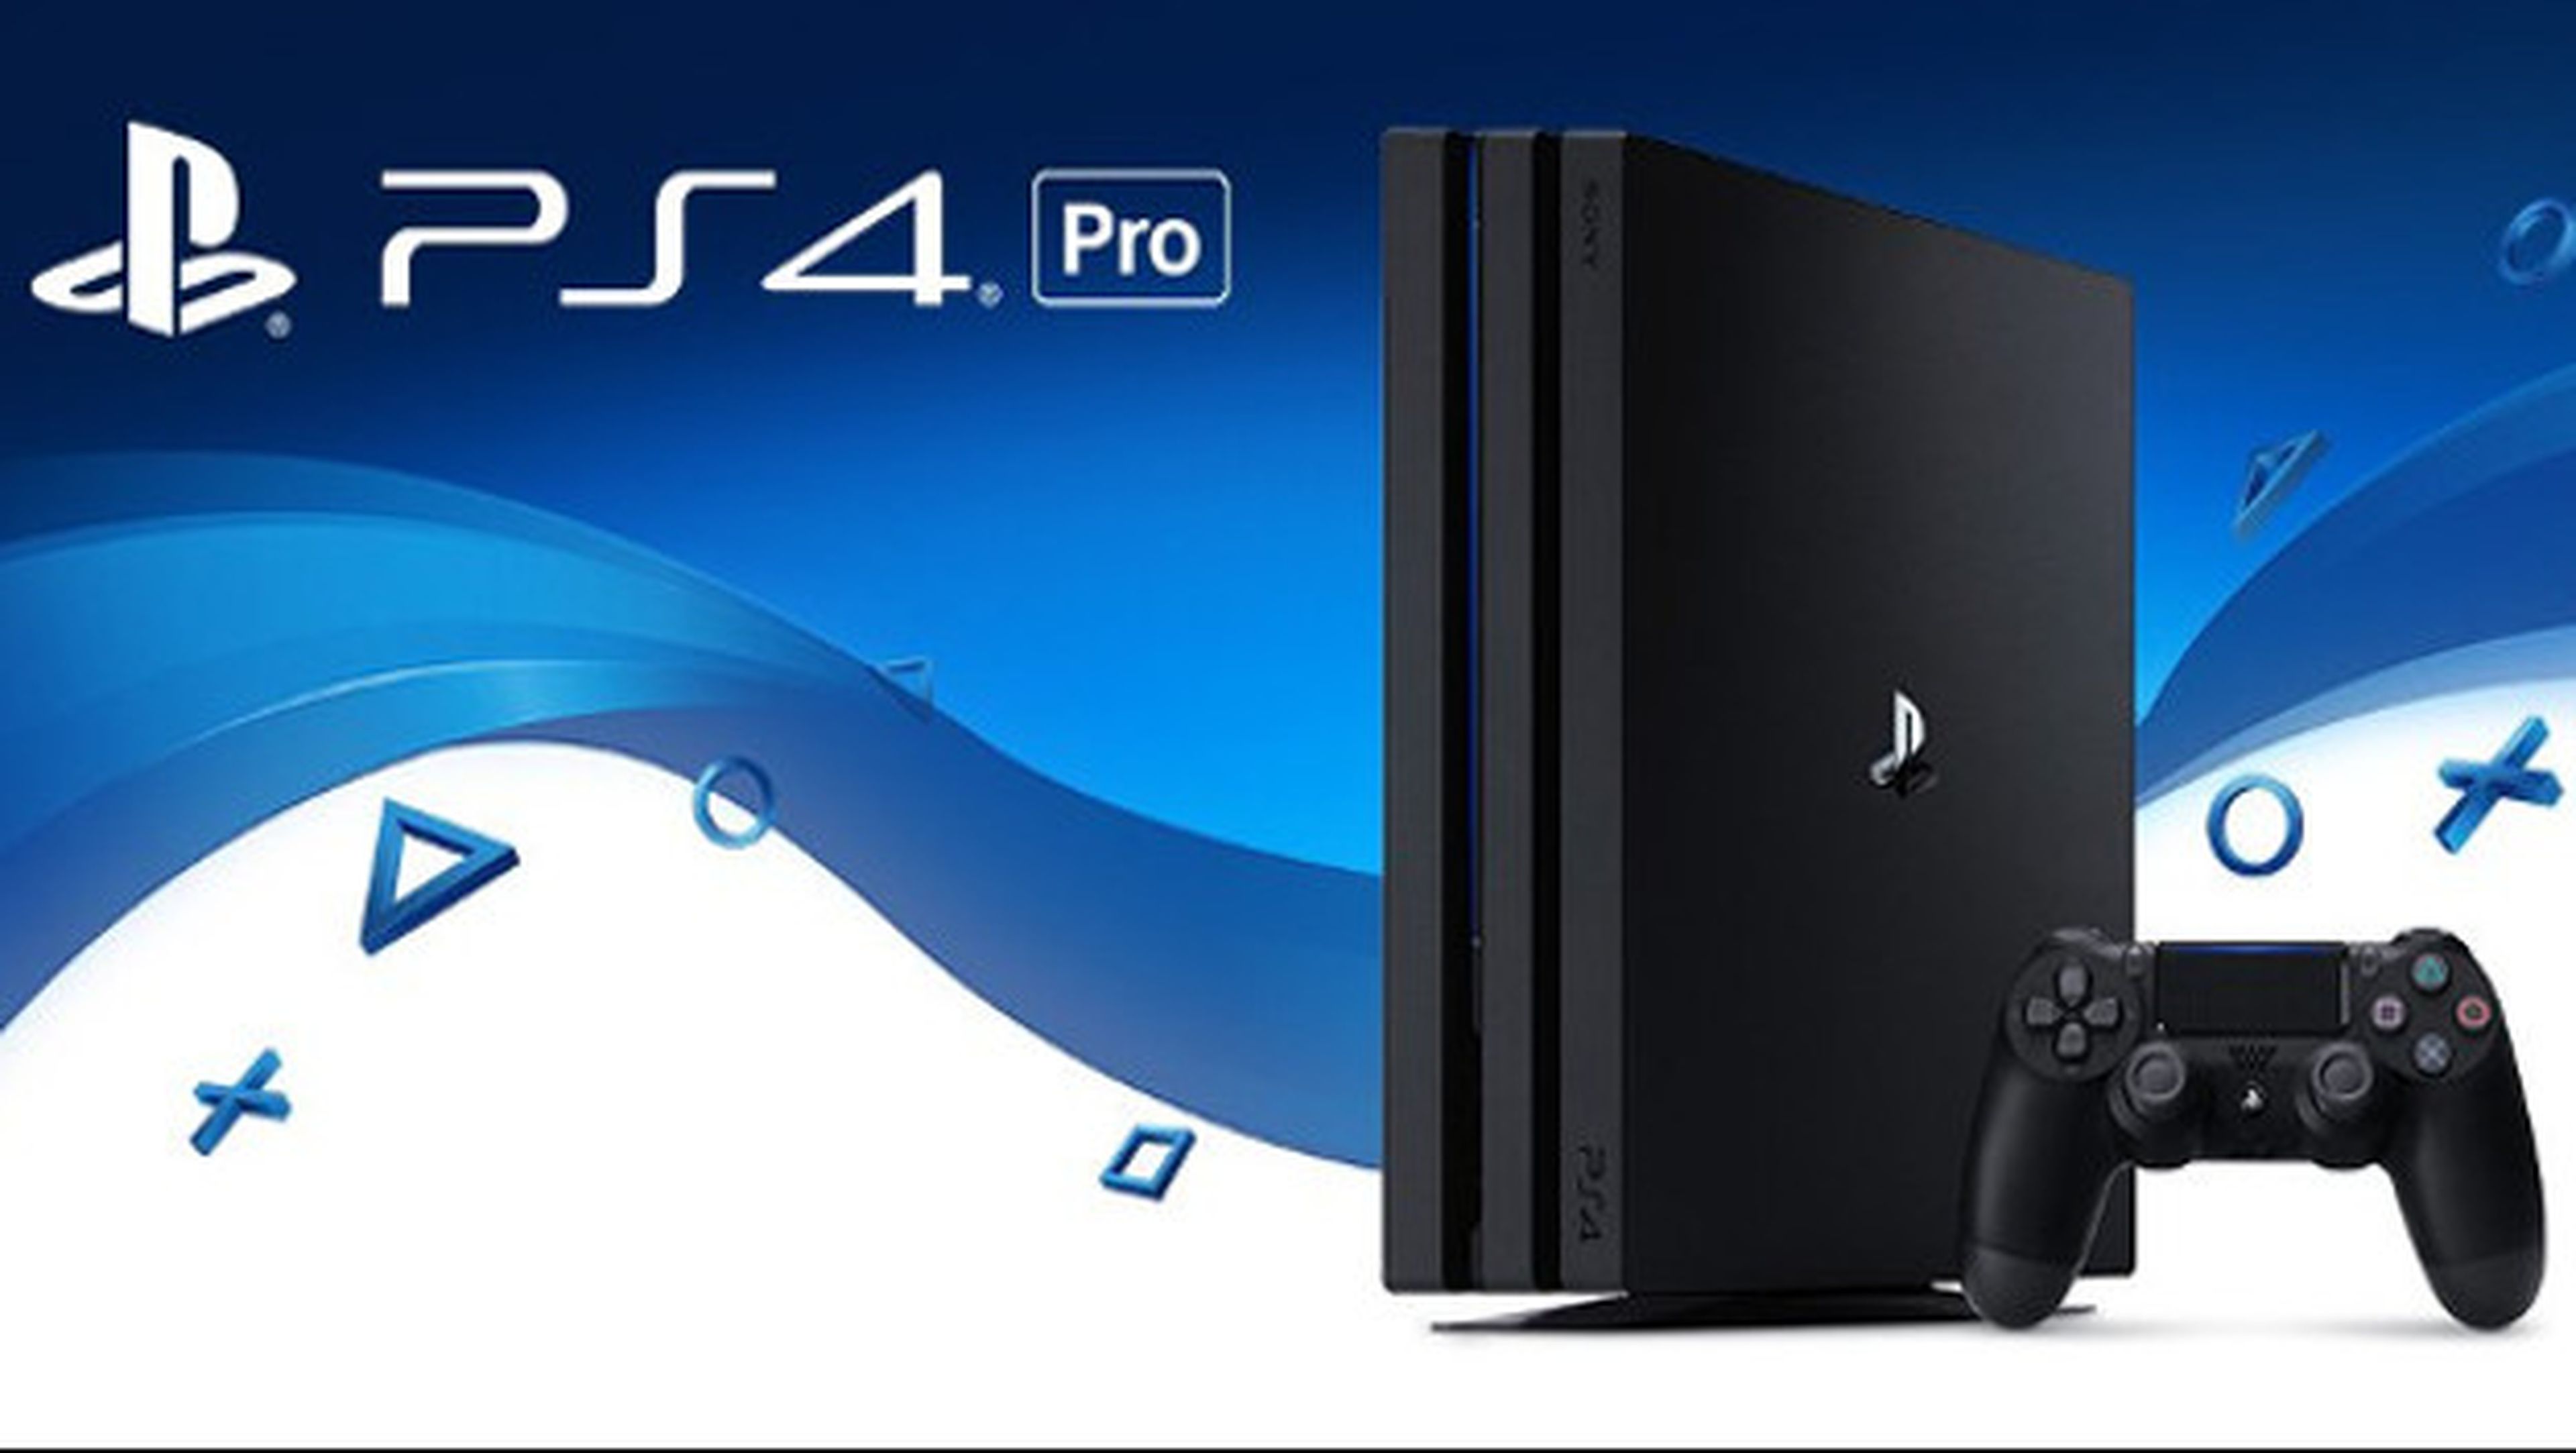 Oferta para comprar la PS4 Pro en Mediamarkt: precio mínimo histórico |